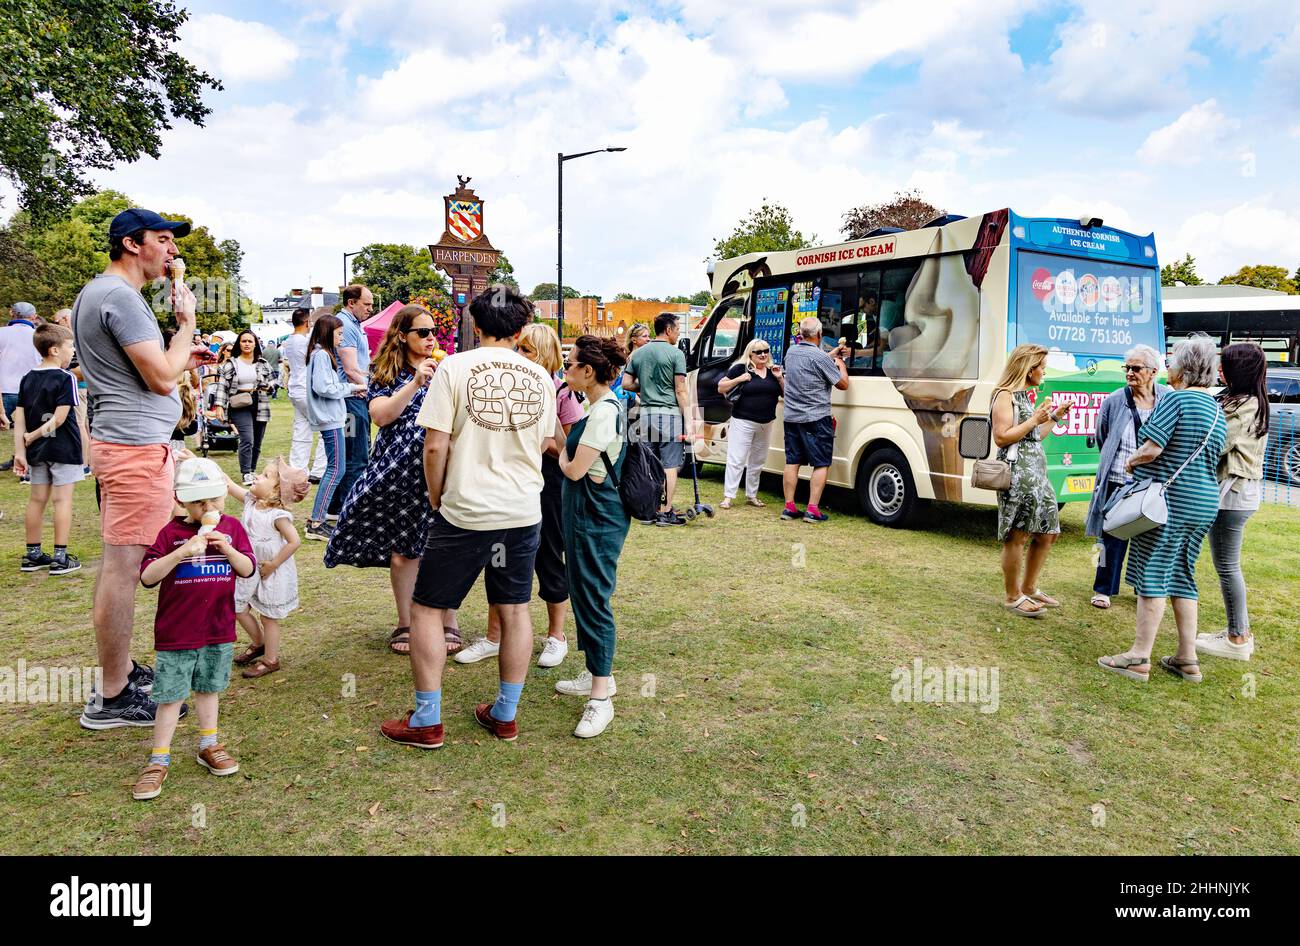 Festival UK - une foule de personnes mangeant et buvant dehors en été soleil , Harpenden Food and Drink Festival, Harpenden Hertfordshire UK Banque D'Images